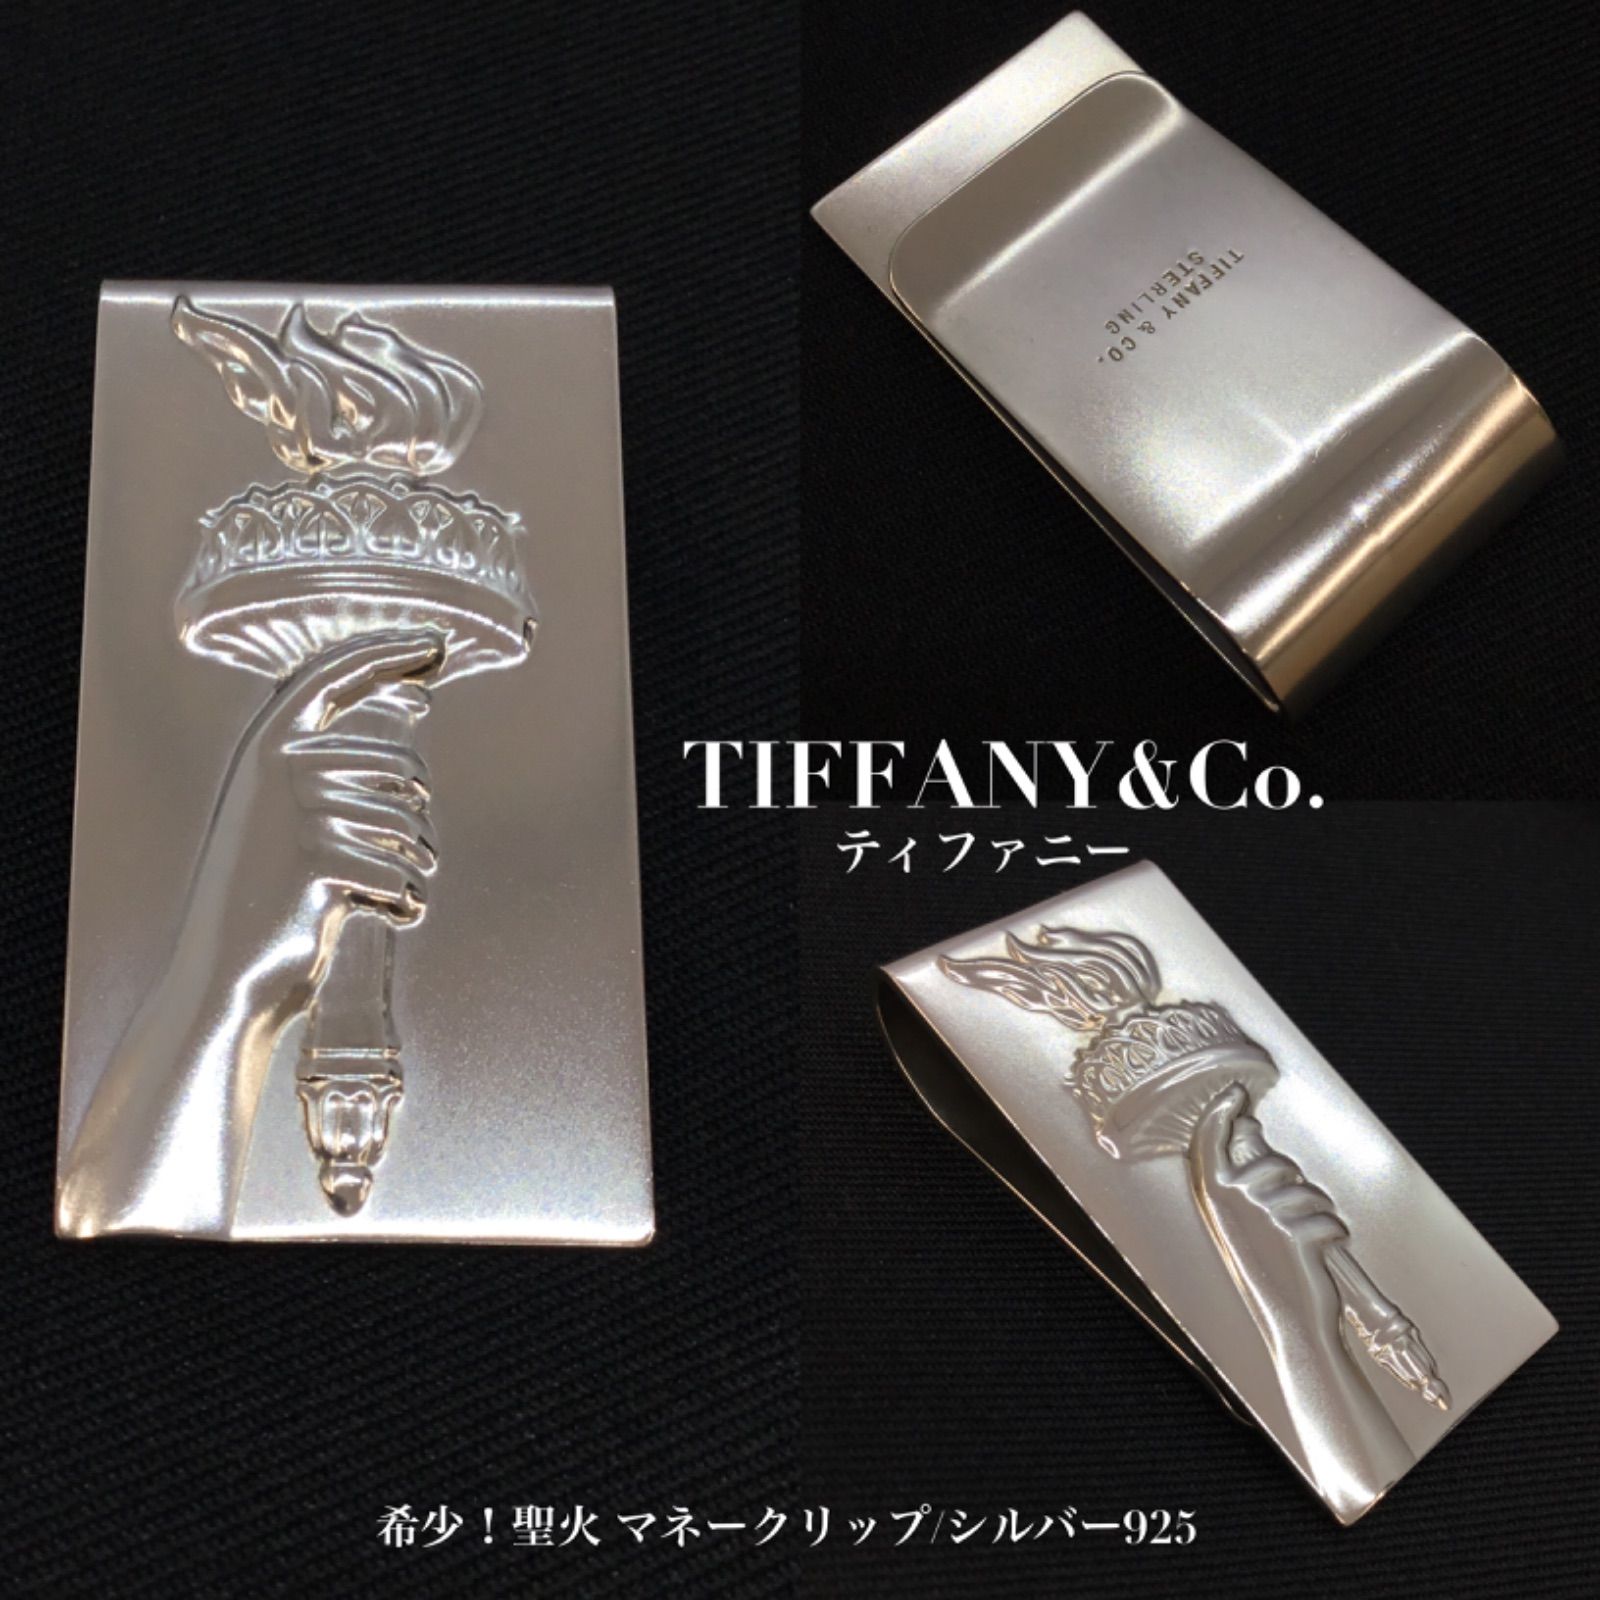 Tiffany & Co ティファニー マネークリップ シルバー925 - 小物